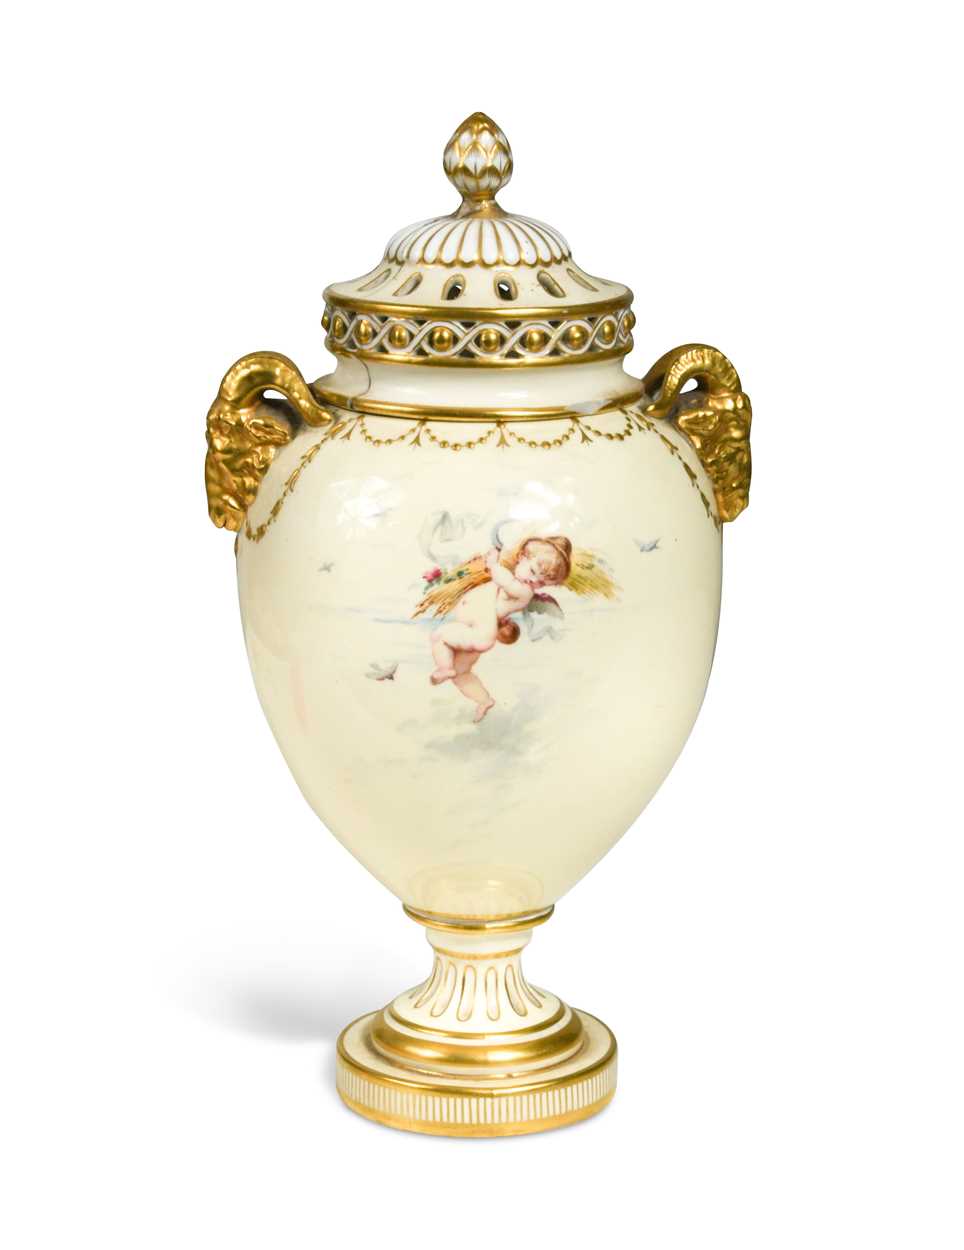 A Minton porcelain ovoid pot pourri circa 1880, 22cm high